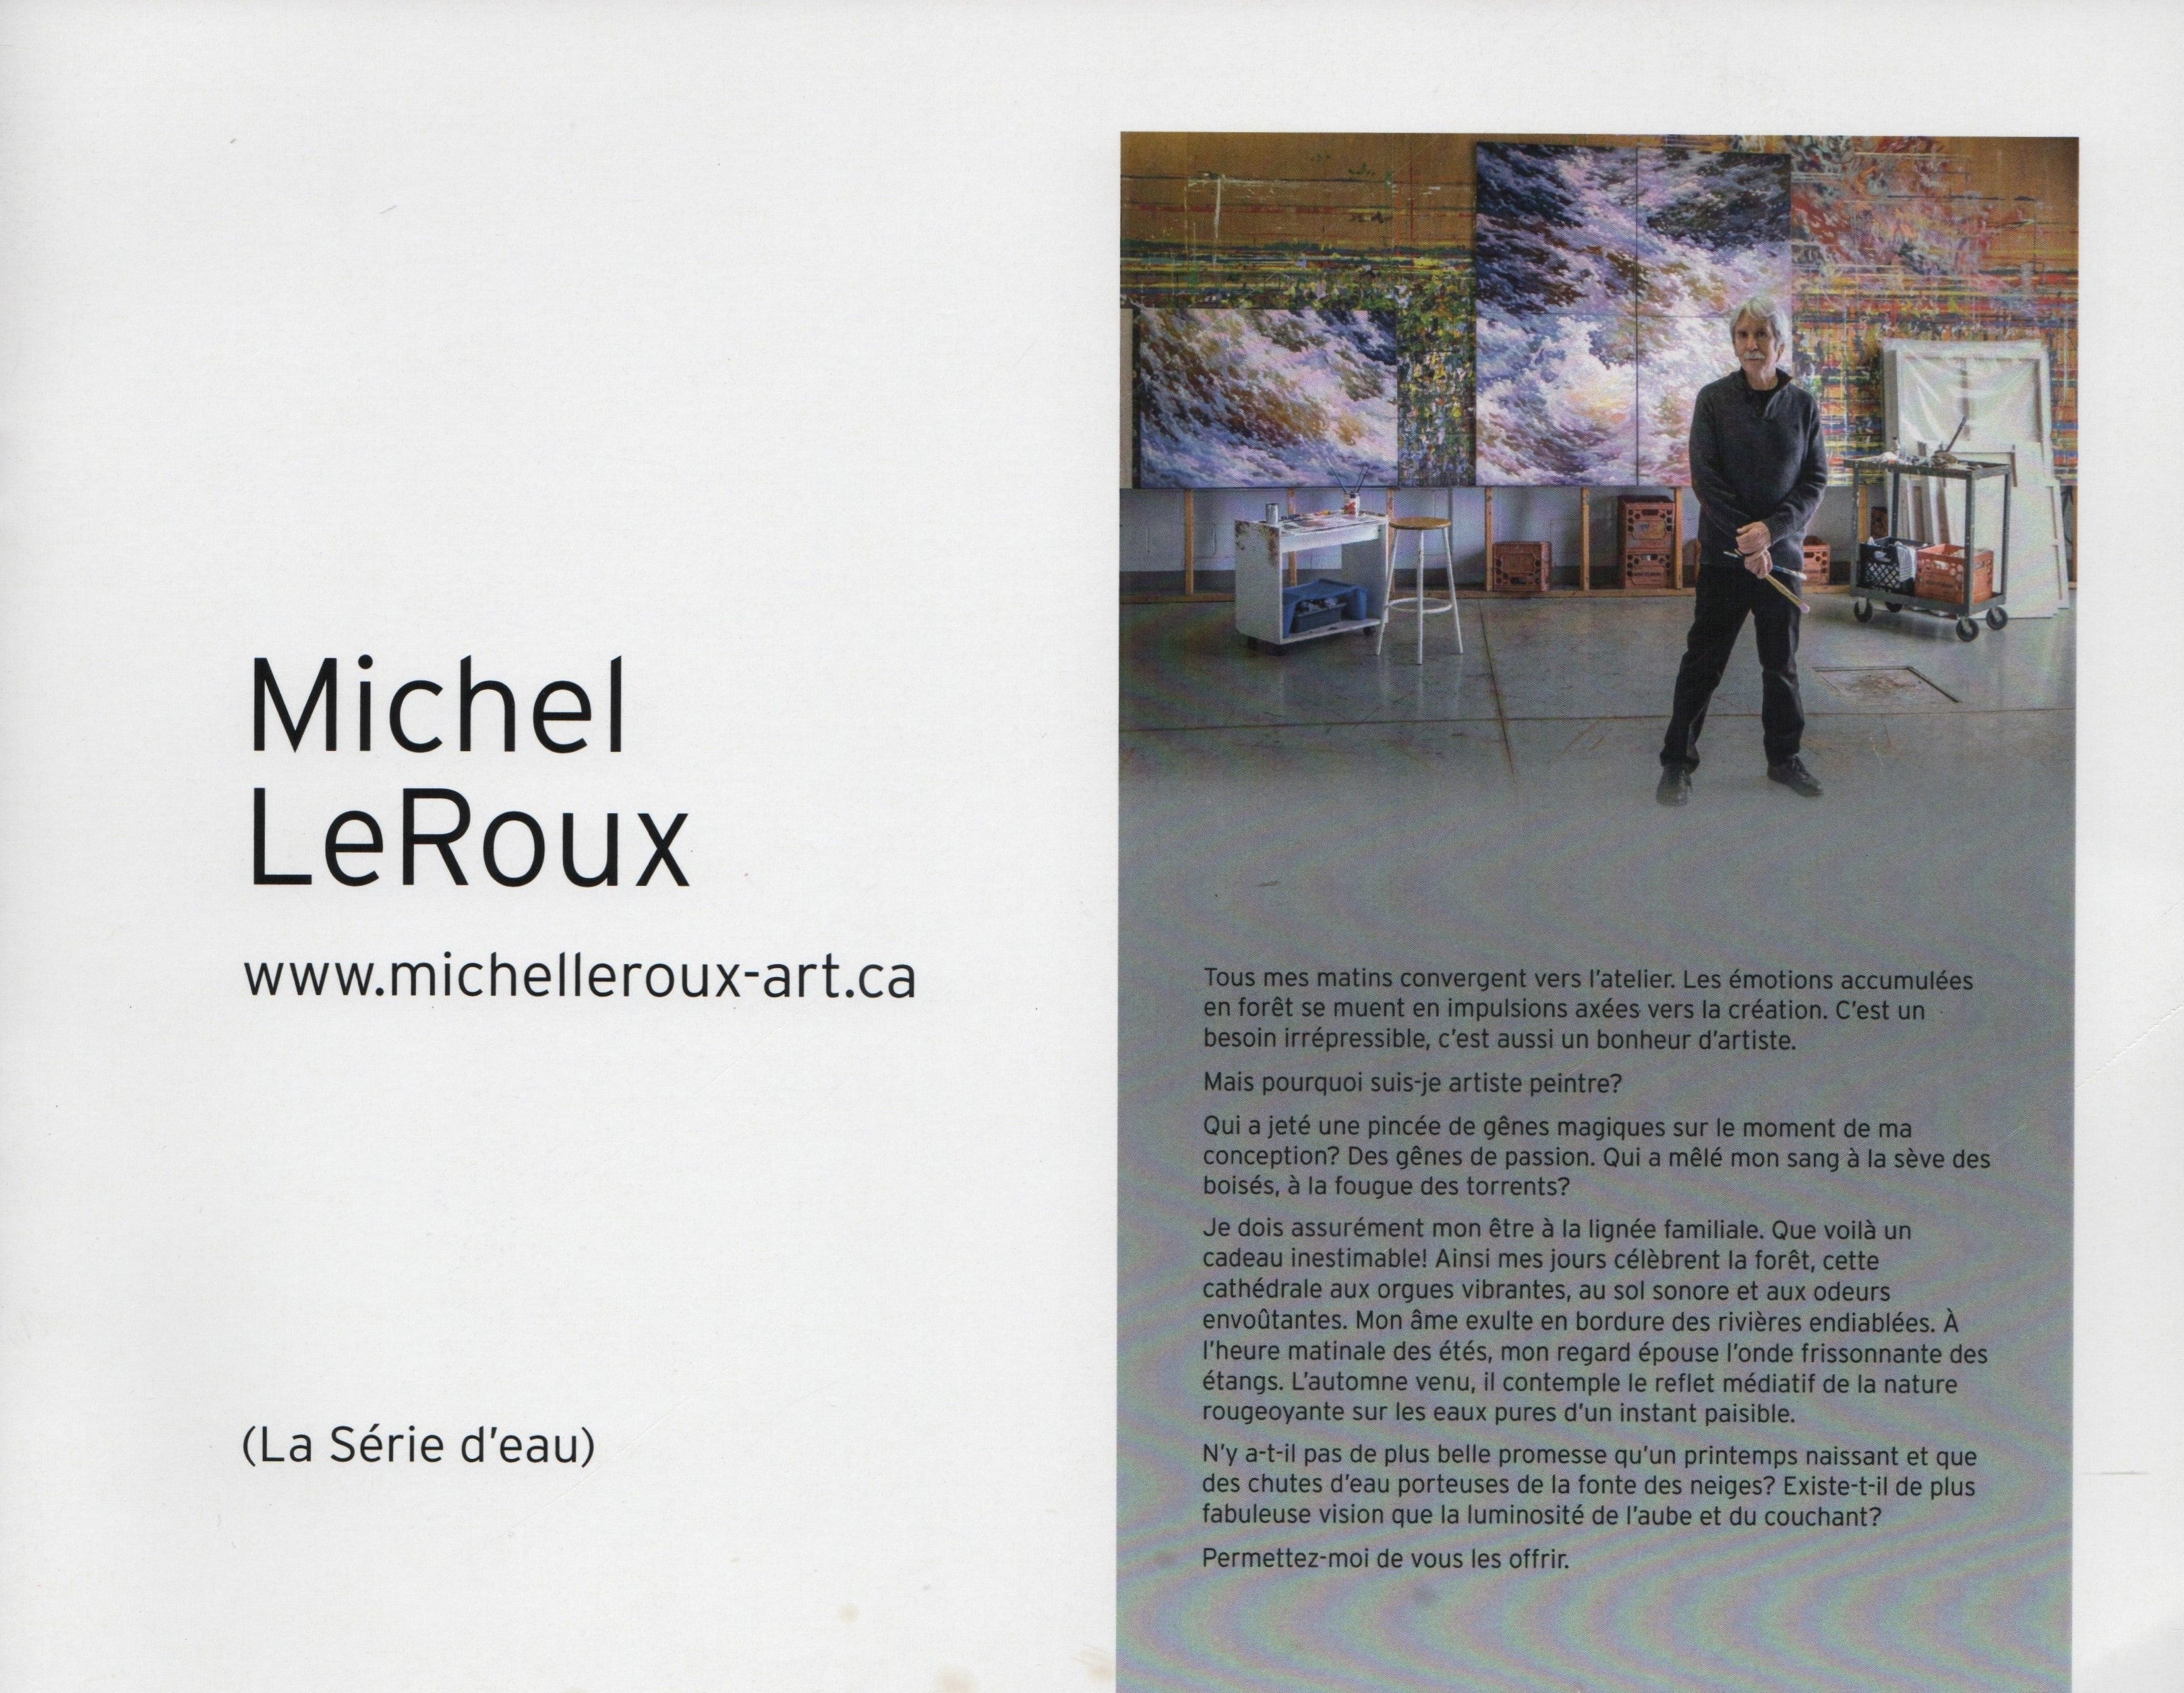 LE ROUX, MICHEL. Michel LeRoux (La Série d'eau)